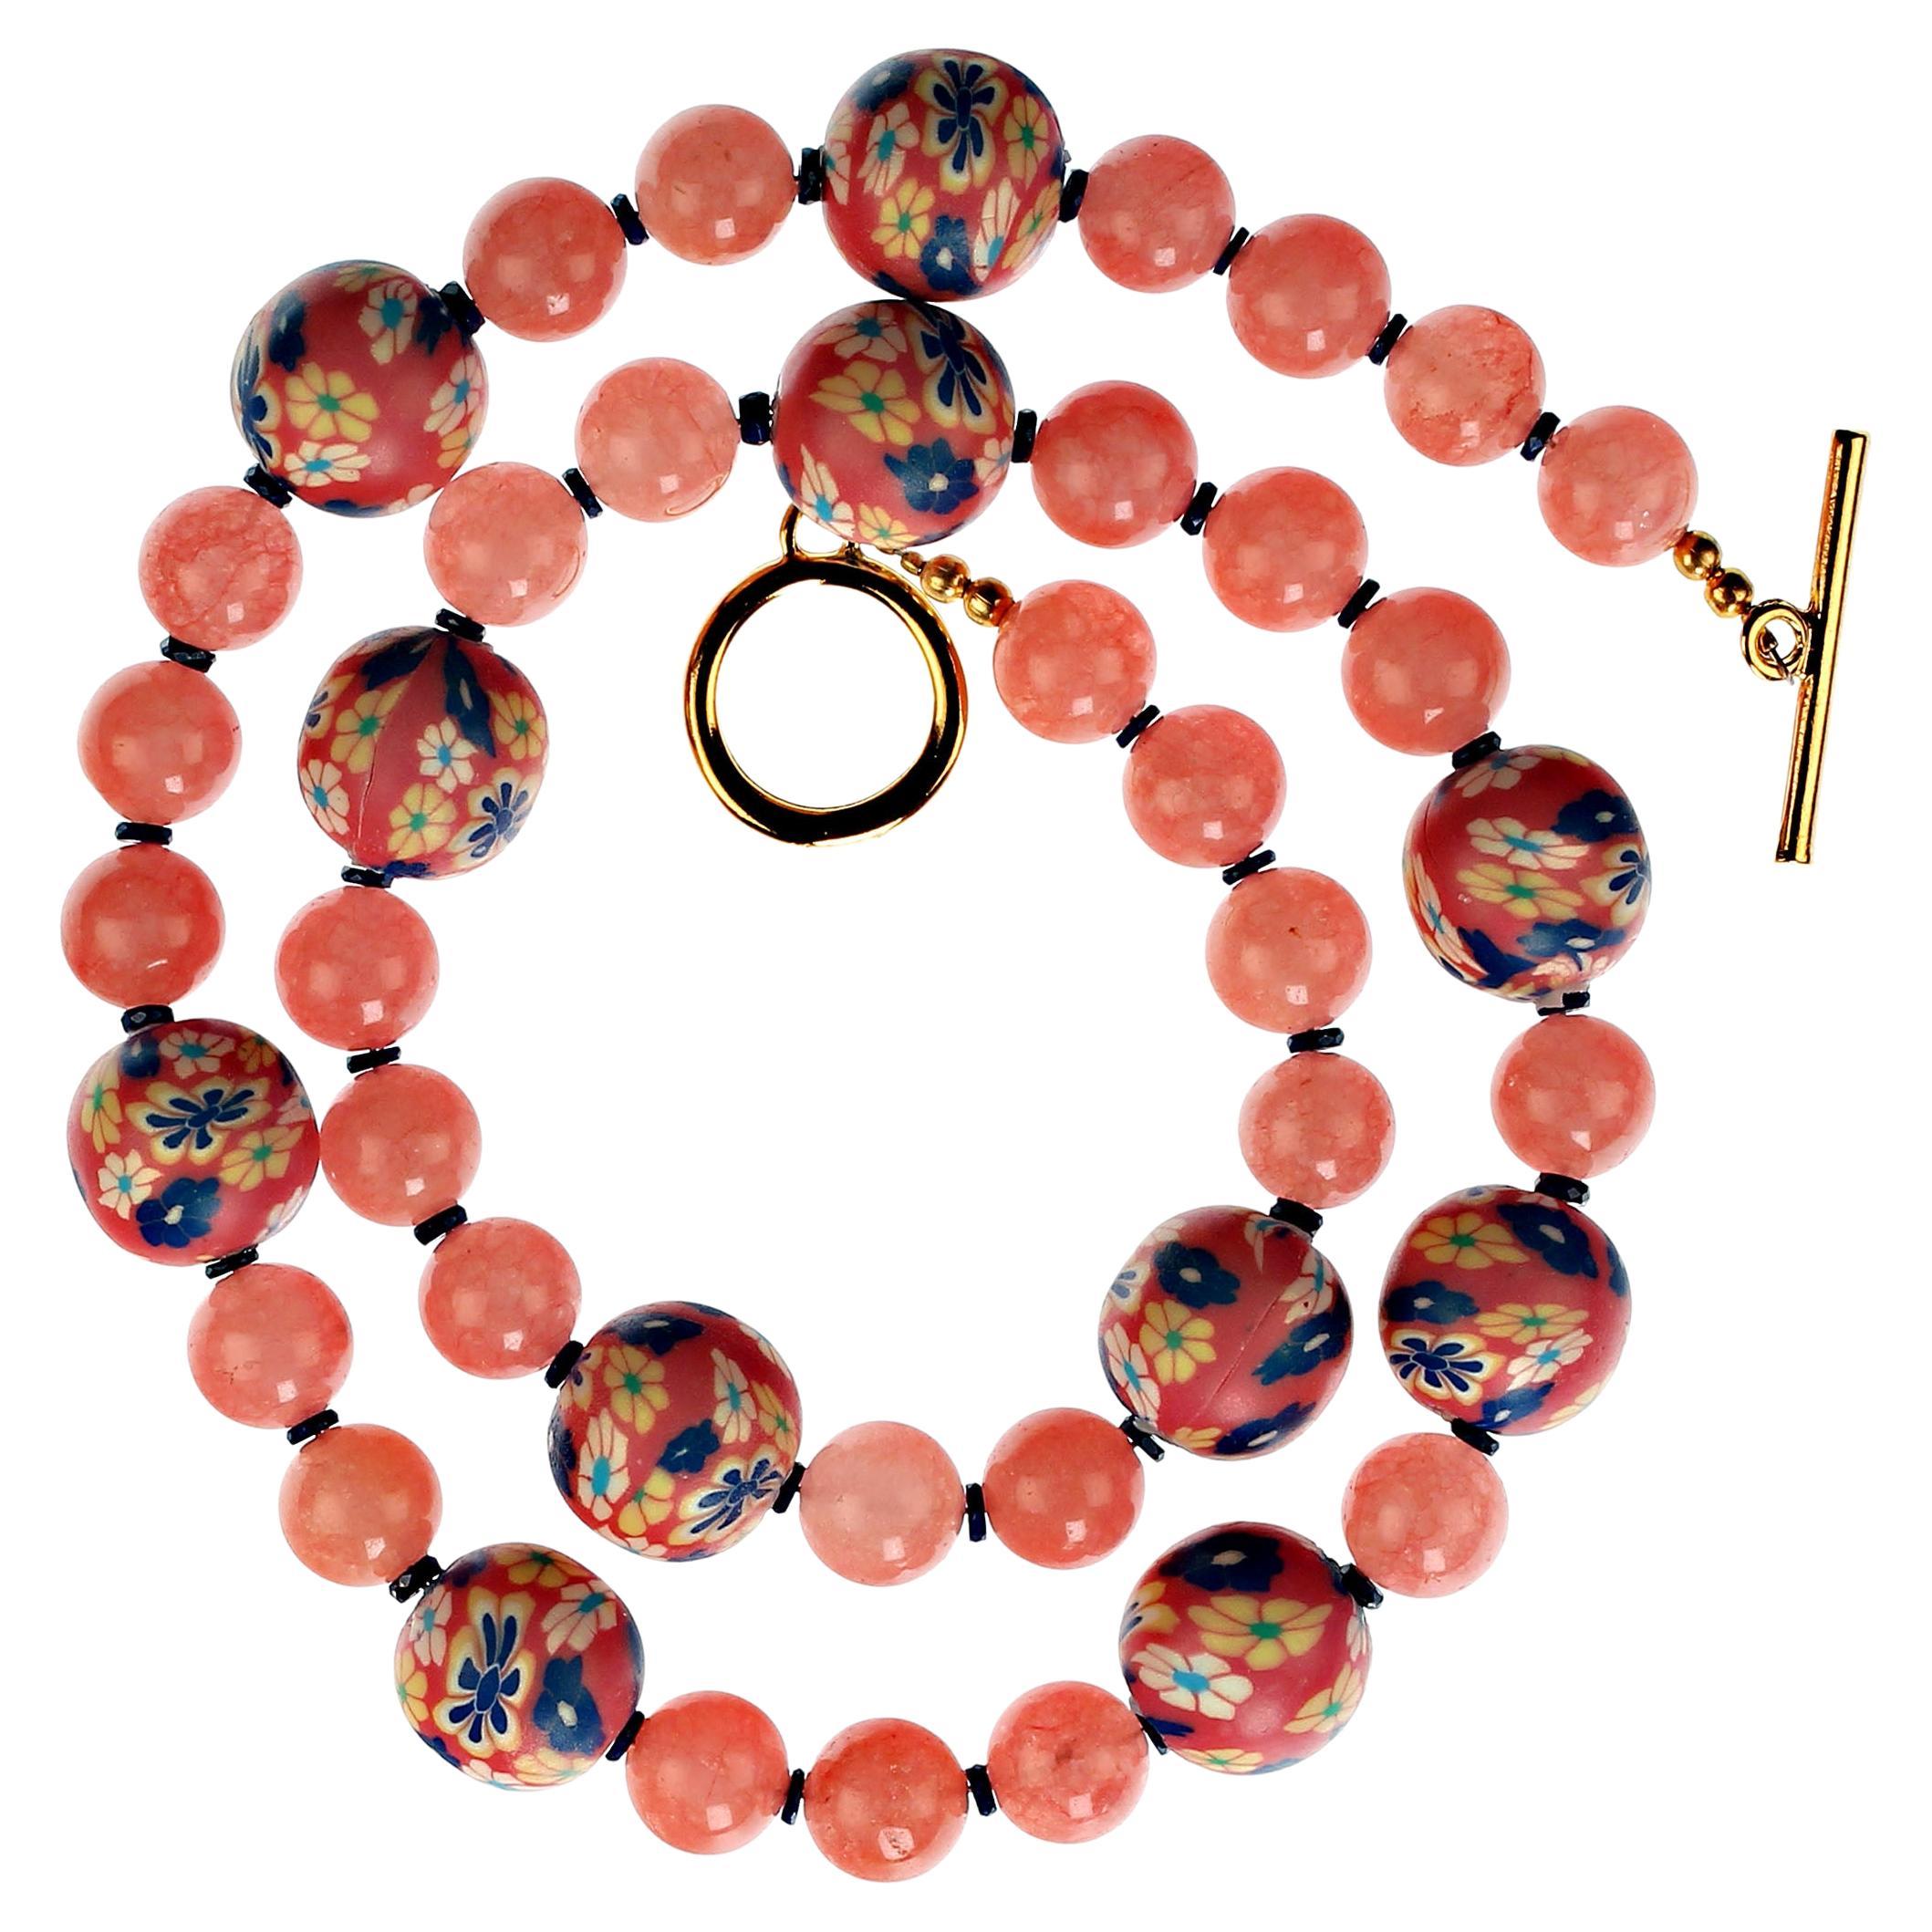 Maßgeschneiderte 22 Zoll rosa Achat Halskette mit chinesischen rosa geblümten Akzent Perlen und Scheiben von Lapis Lazuli, um den Achat zu verbessern.  Diese einzigartige Halskette ist perfekt für Frühling und Sommer.  Mit einer Größe von 22 Zoll